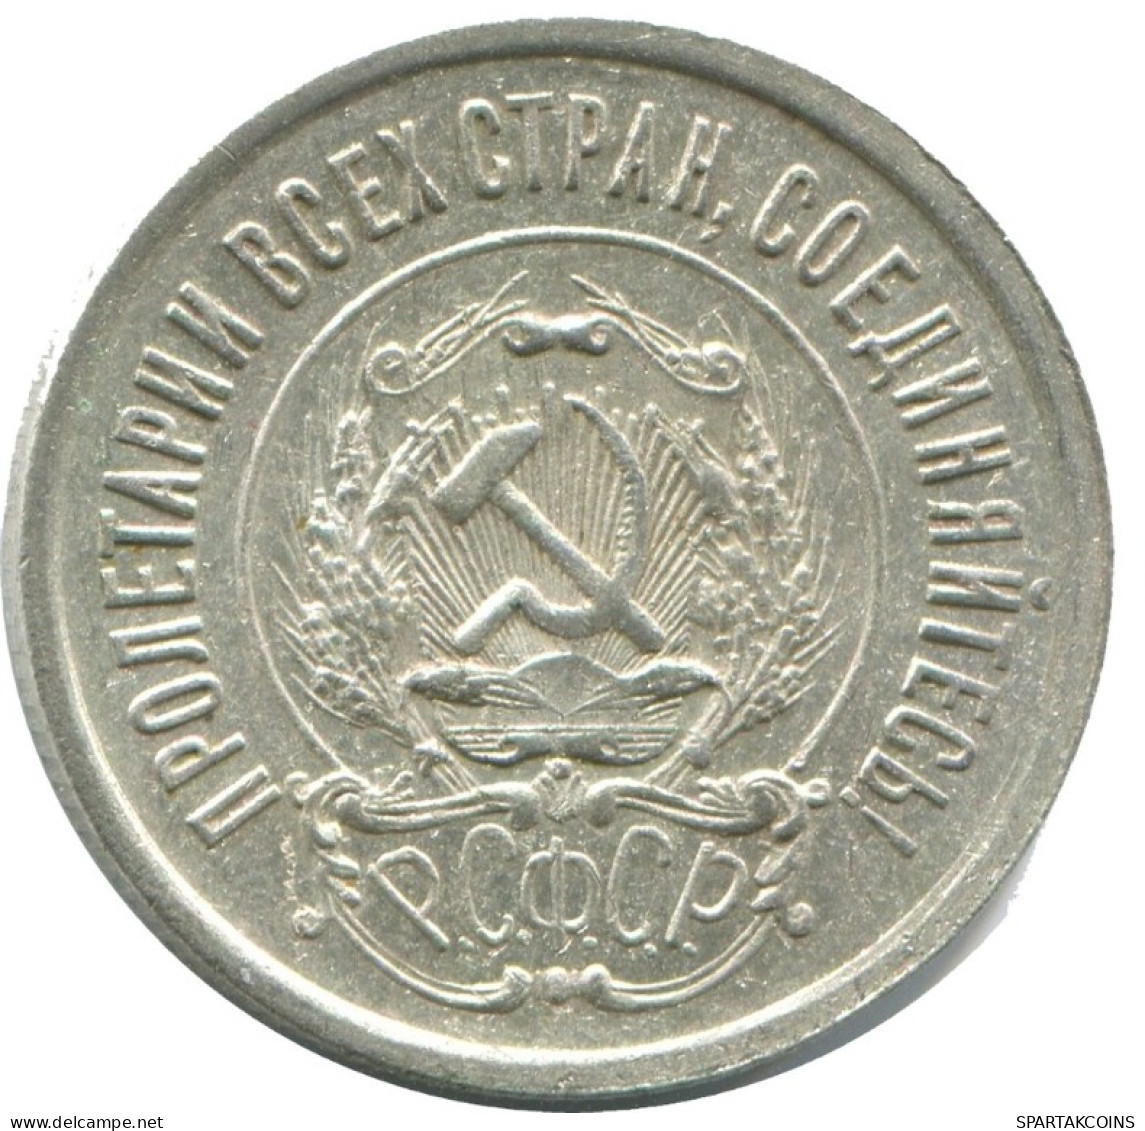 20 KOPEKS 1923 RUSSLAND RUSSIA RSFSR SILBER Münze HIGH GRADE #AF695.D.A - Russia